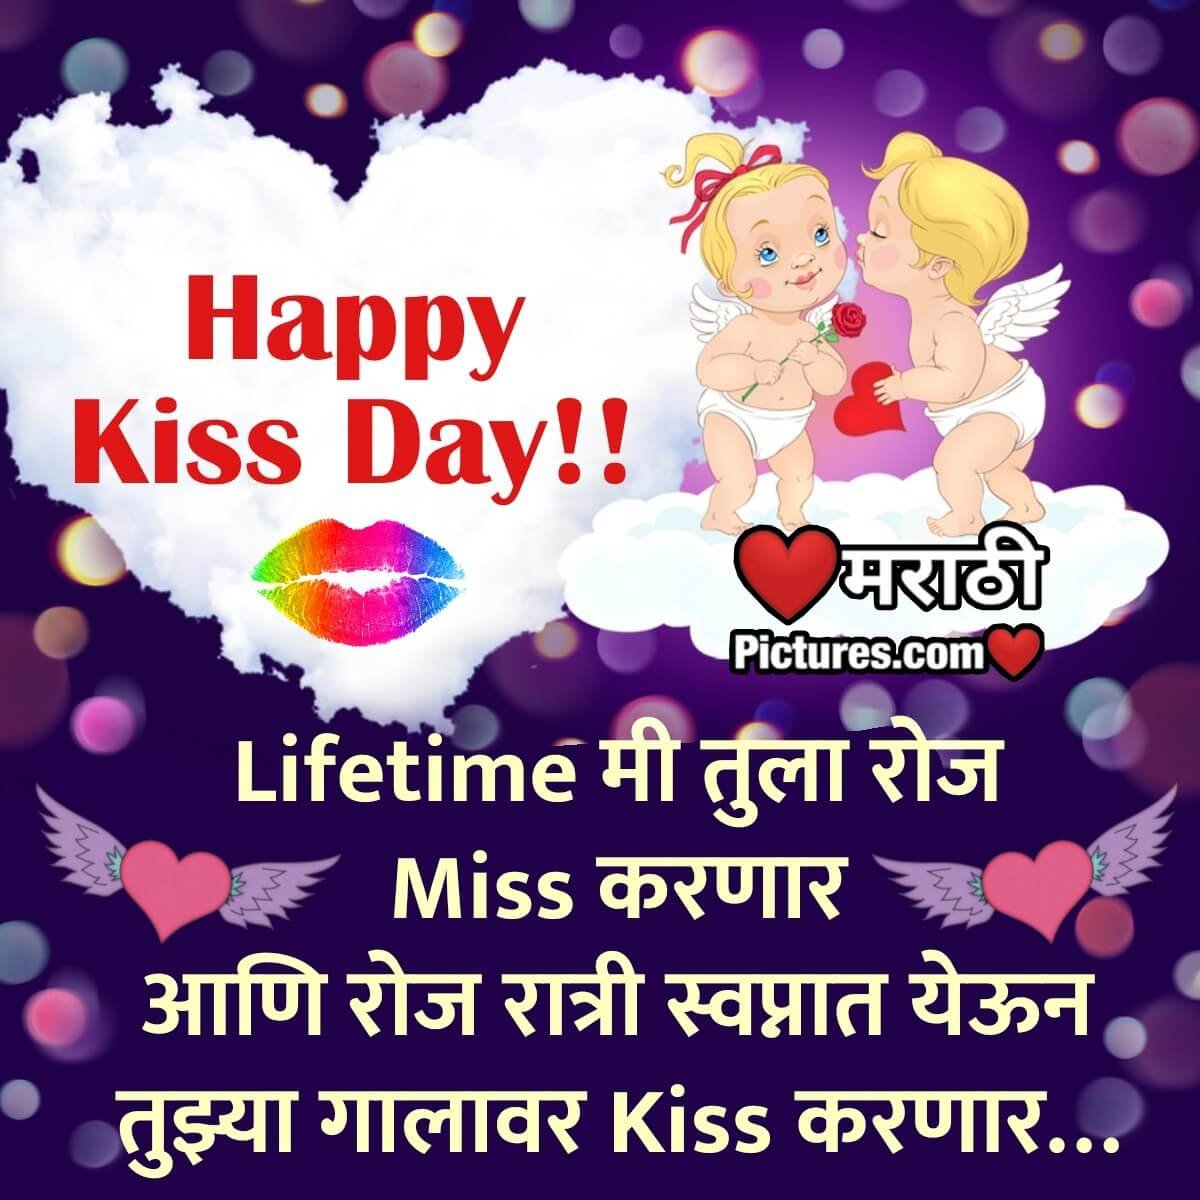 Happy Kiss Day Image Marathi